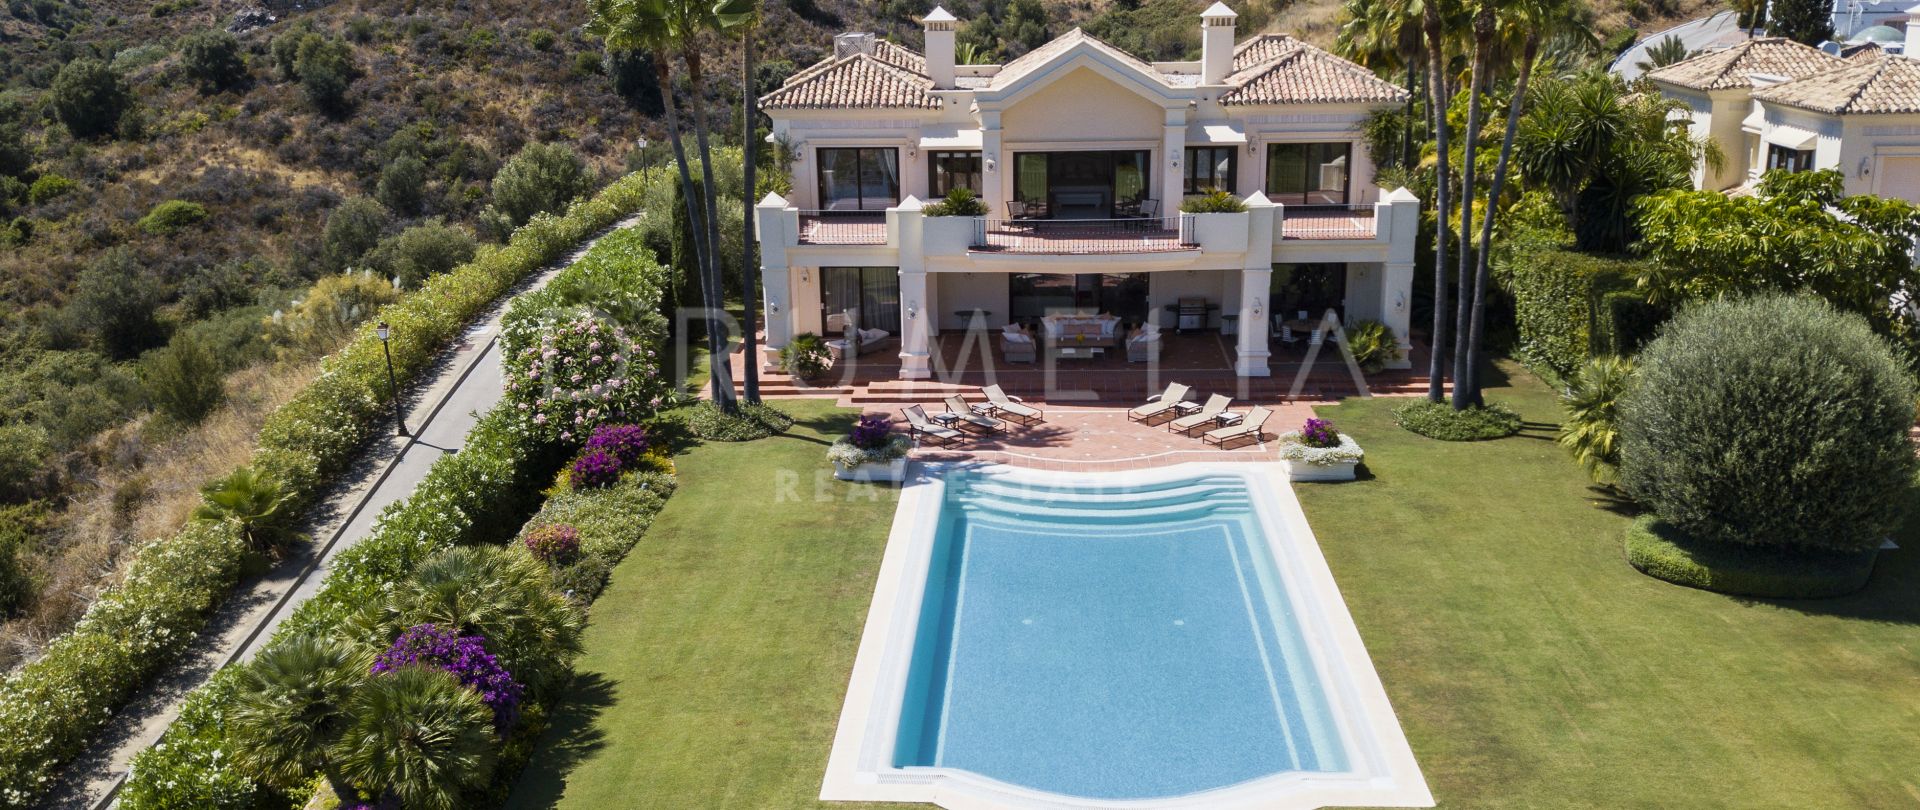 Imposante klassische Villa mit Meerblick im exklusiven Marbella Hill Club